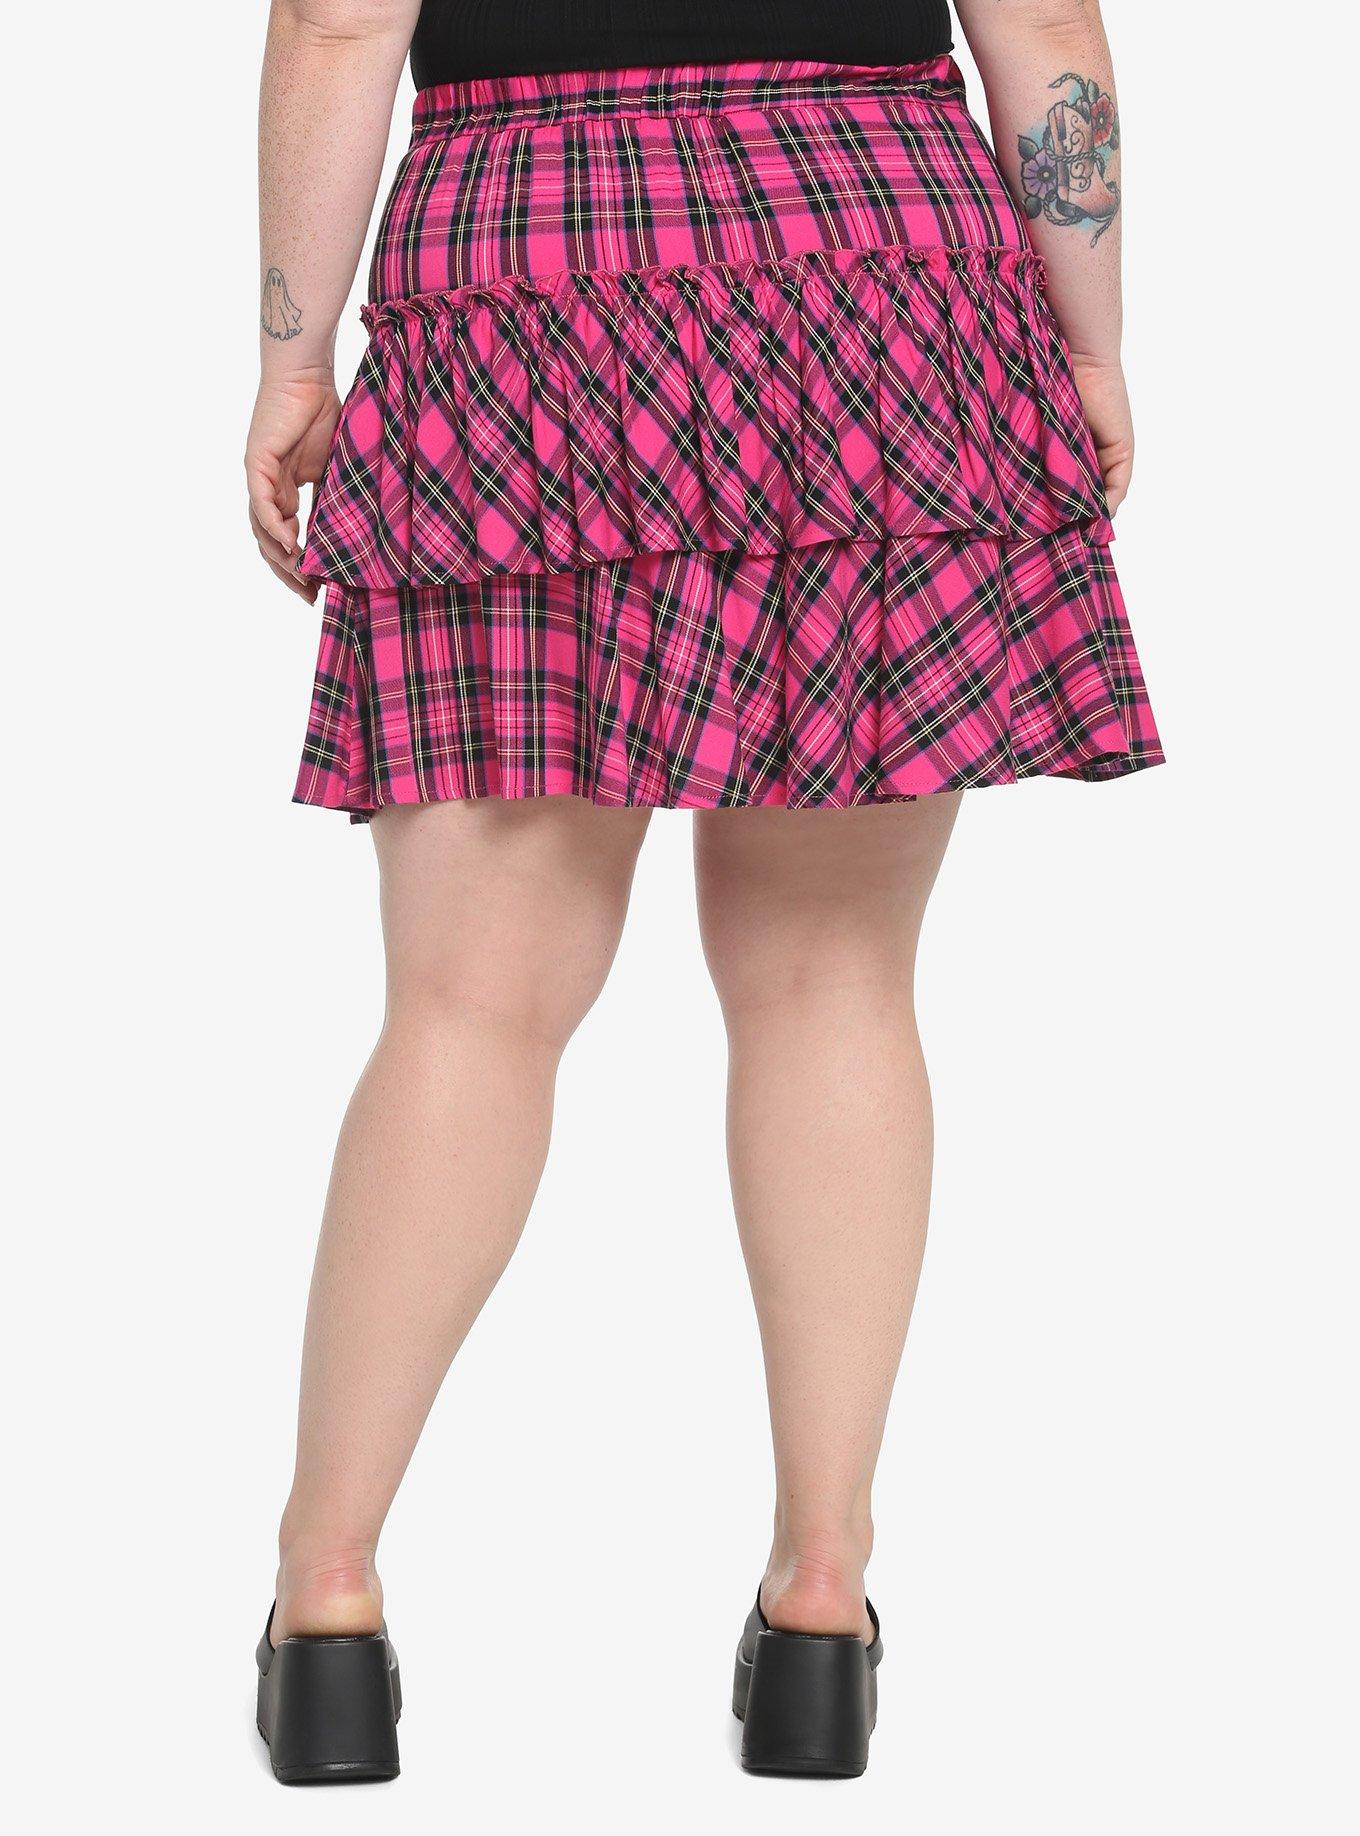 Pink Plaid Wide Yoke Ruffle Skirt Plus Size, PLAID - PINK, alternate